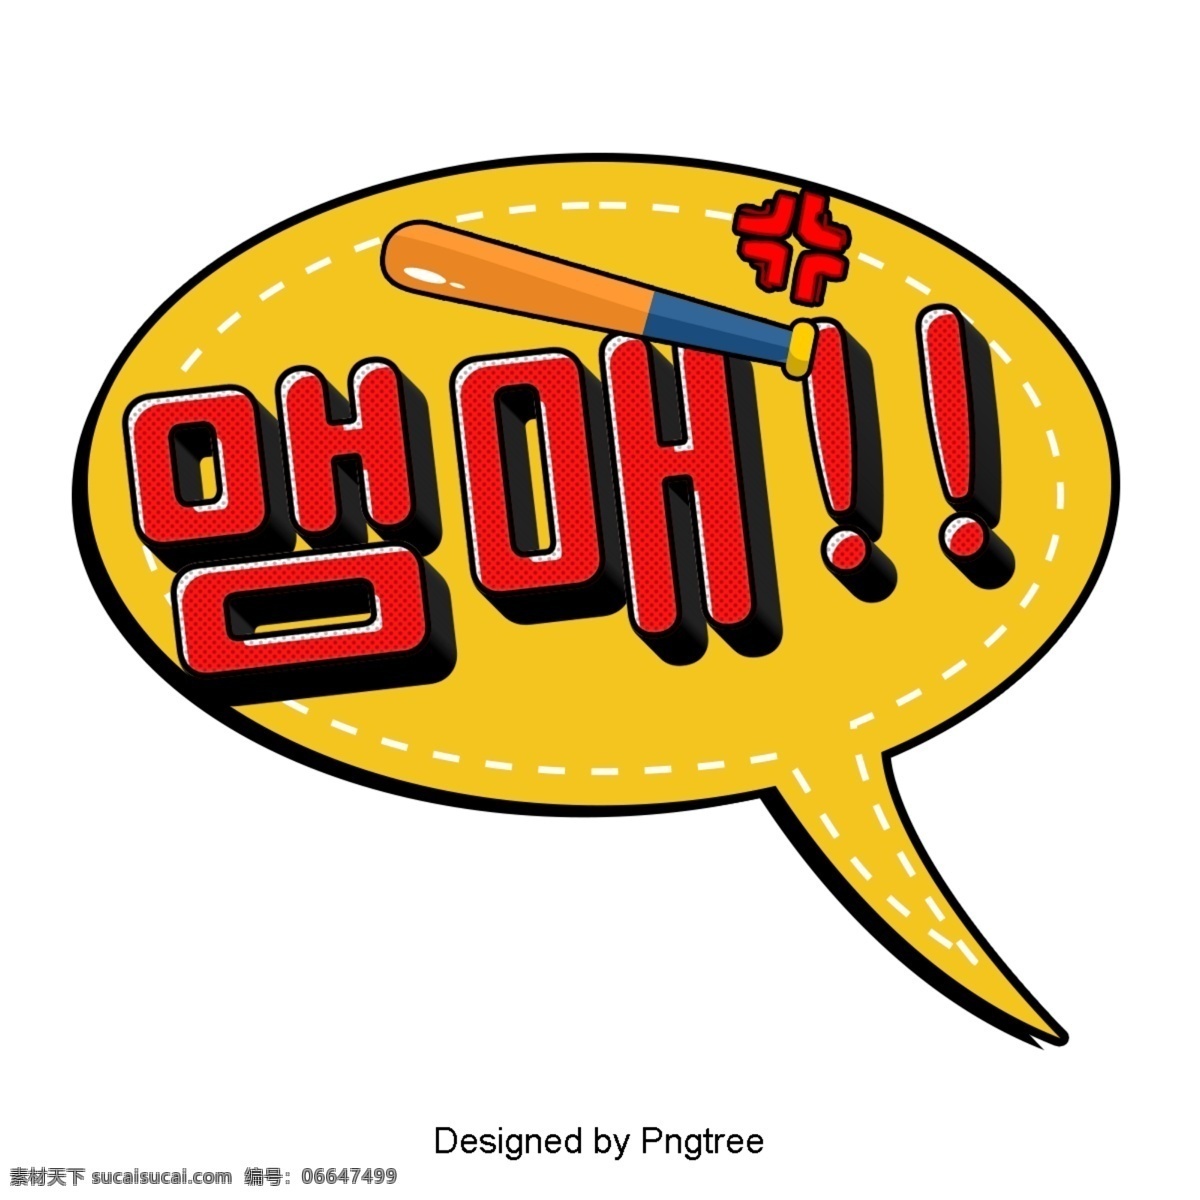 语 风 每个 卡通 字体 颜色 红色 帧 现场 韩国 现代 时尚 可爱 每个卡通 语风 对话泡泡